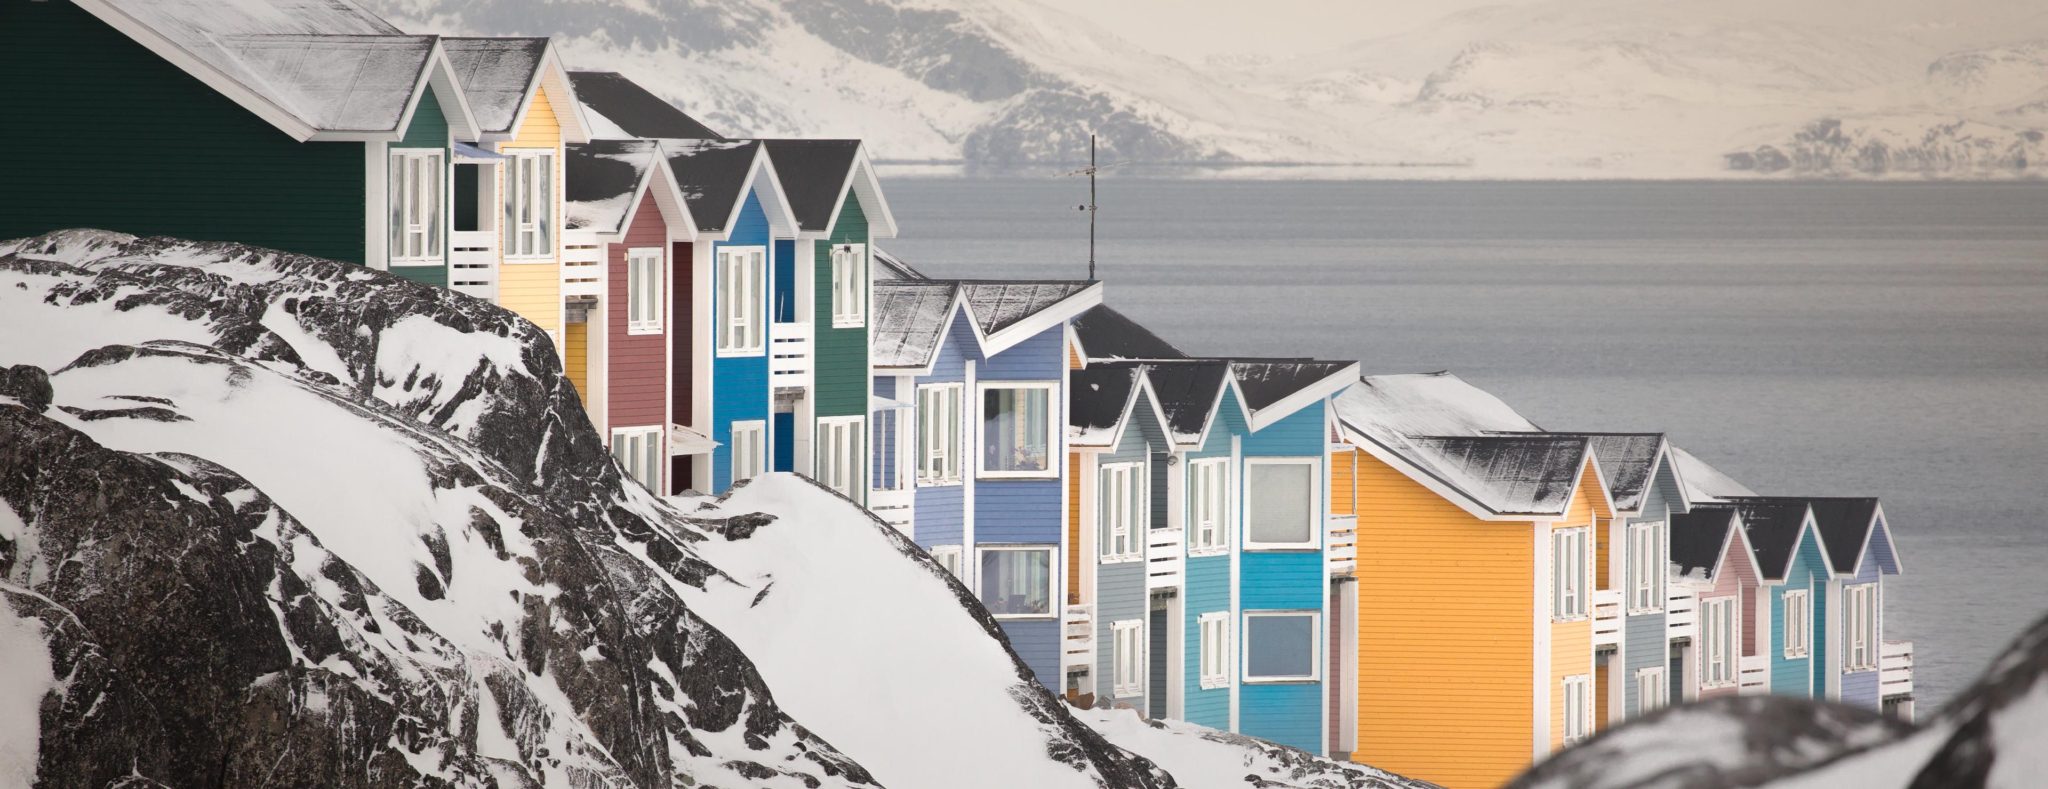 Gekleurde huisjes Nuuk - foto: Mads Phil - Visit Greenland